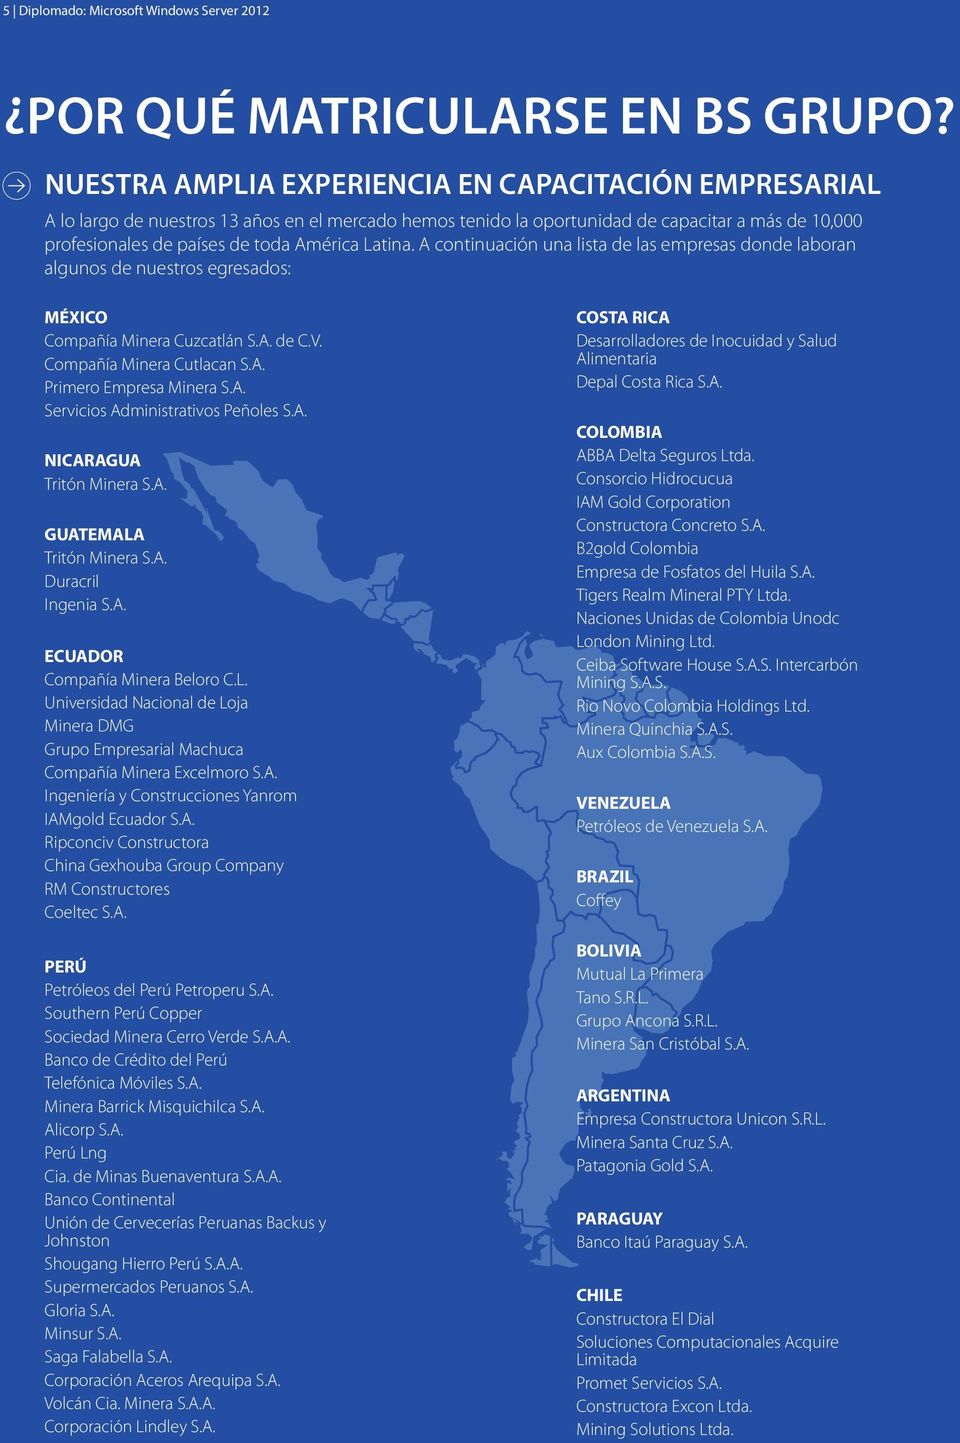 Latina. A continuación una lista de las empresas donde laboran algunos de nuestros egresados: MÉXICO Compañía Minera Cuzcatlán S.A. de C.V. Compañía Minera Cutlacan S.A. Primero Empresa Minera S.A. Servicios Administrativos Peñoles S.